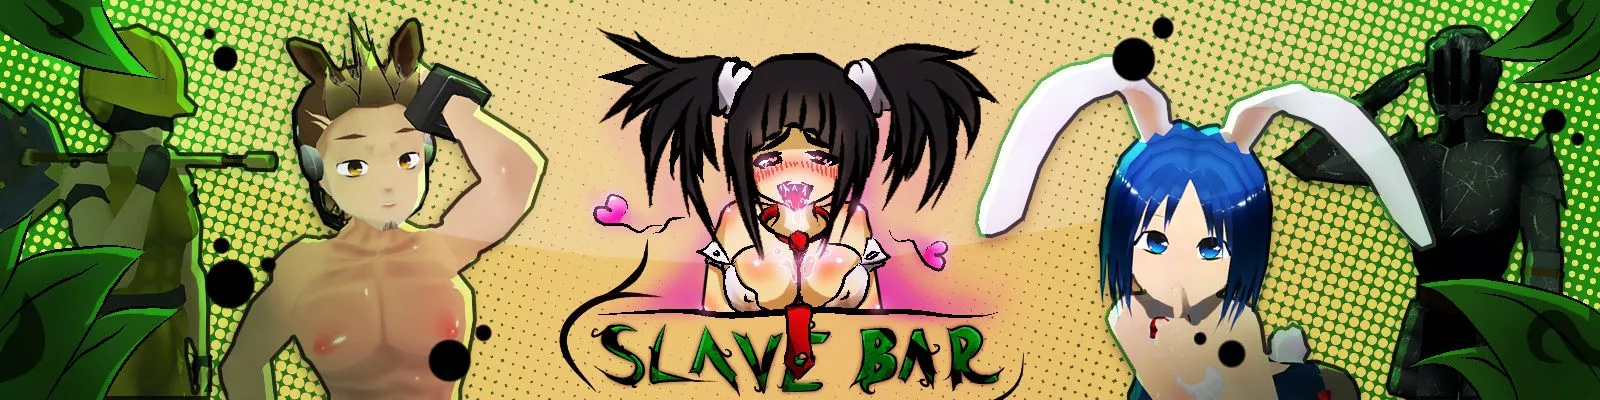 SlaveBar [v191115p] main image